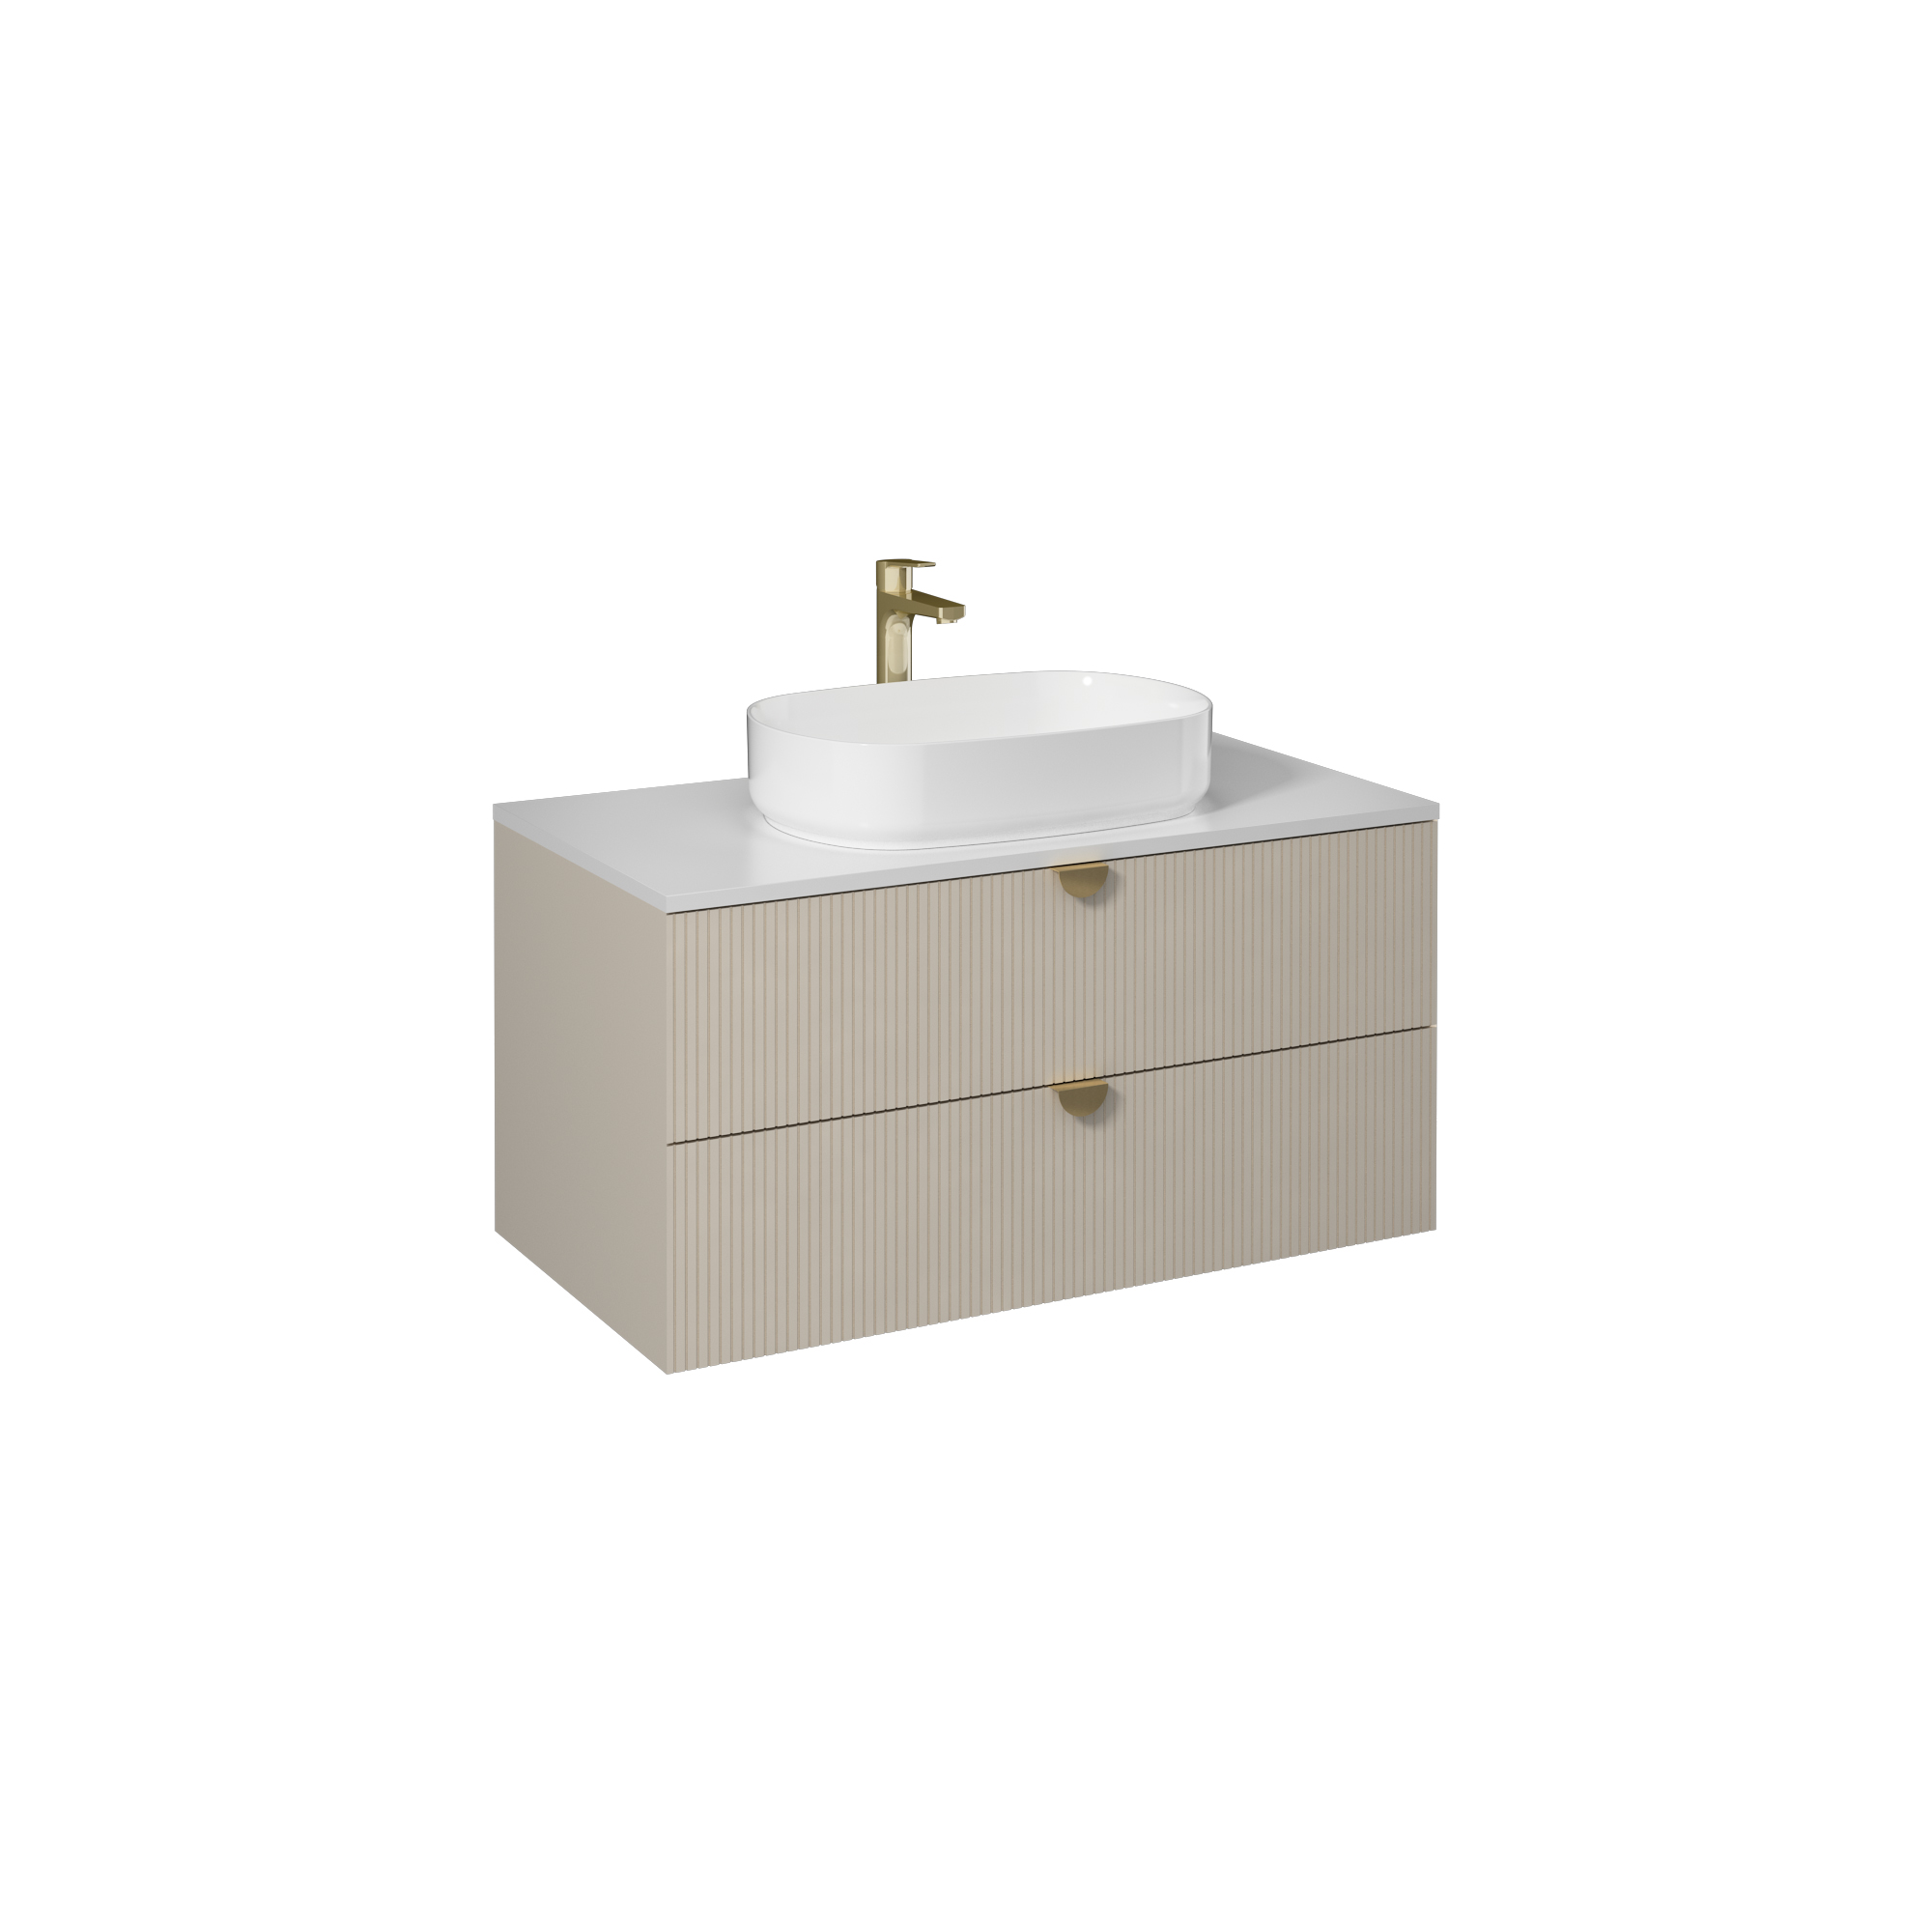 Infinity Washbasin Cabinet Cream, with Ivory Washbasin 130 cm